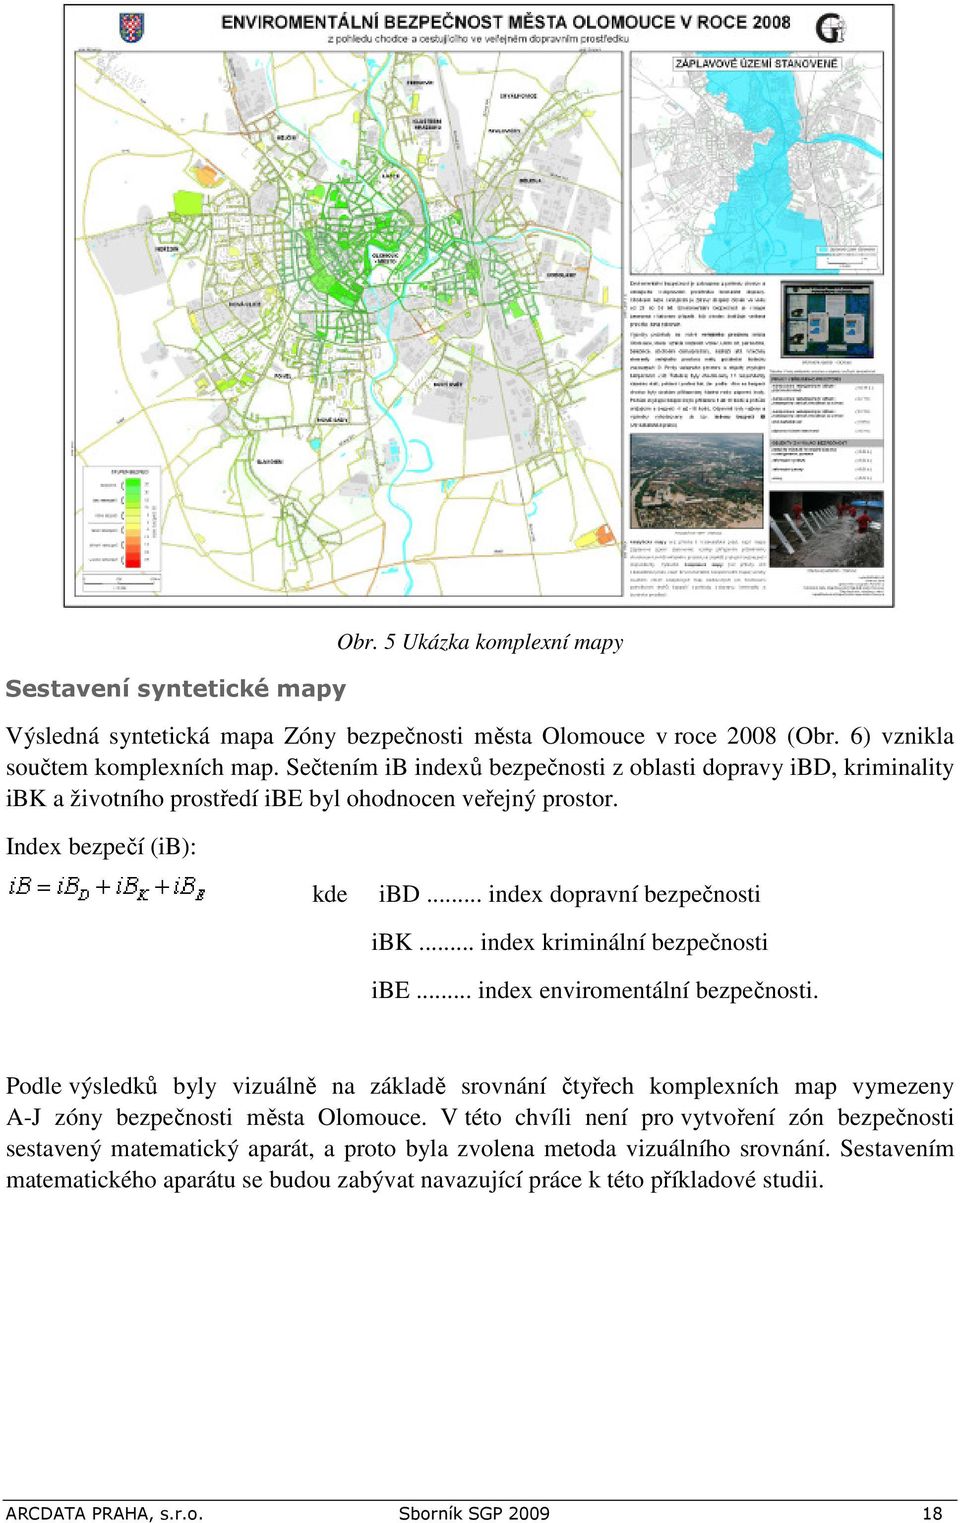 .. index kriminální bezpečnosti ibe... index enviromentální bezpečnosti. Podle výsledků byly vizuálně na základě srovnání čtyřech komplexních map vymezeny A-J zóny bezpečnosti města Olomouce.